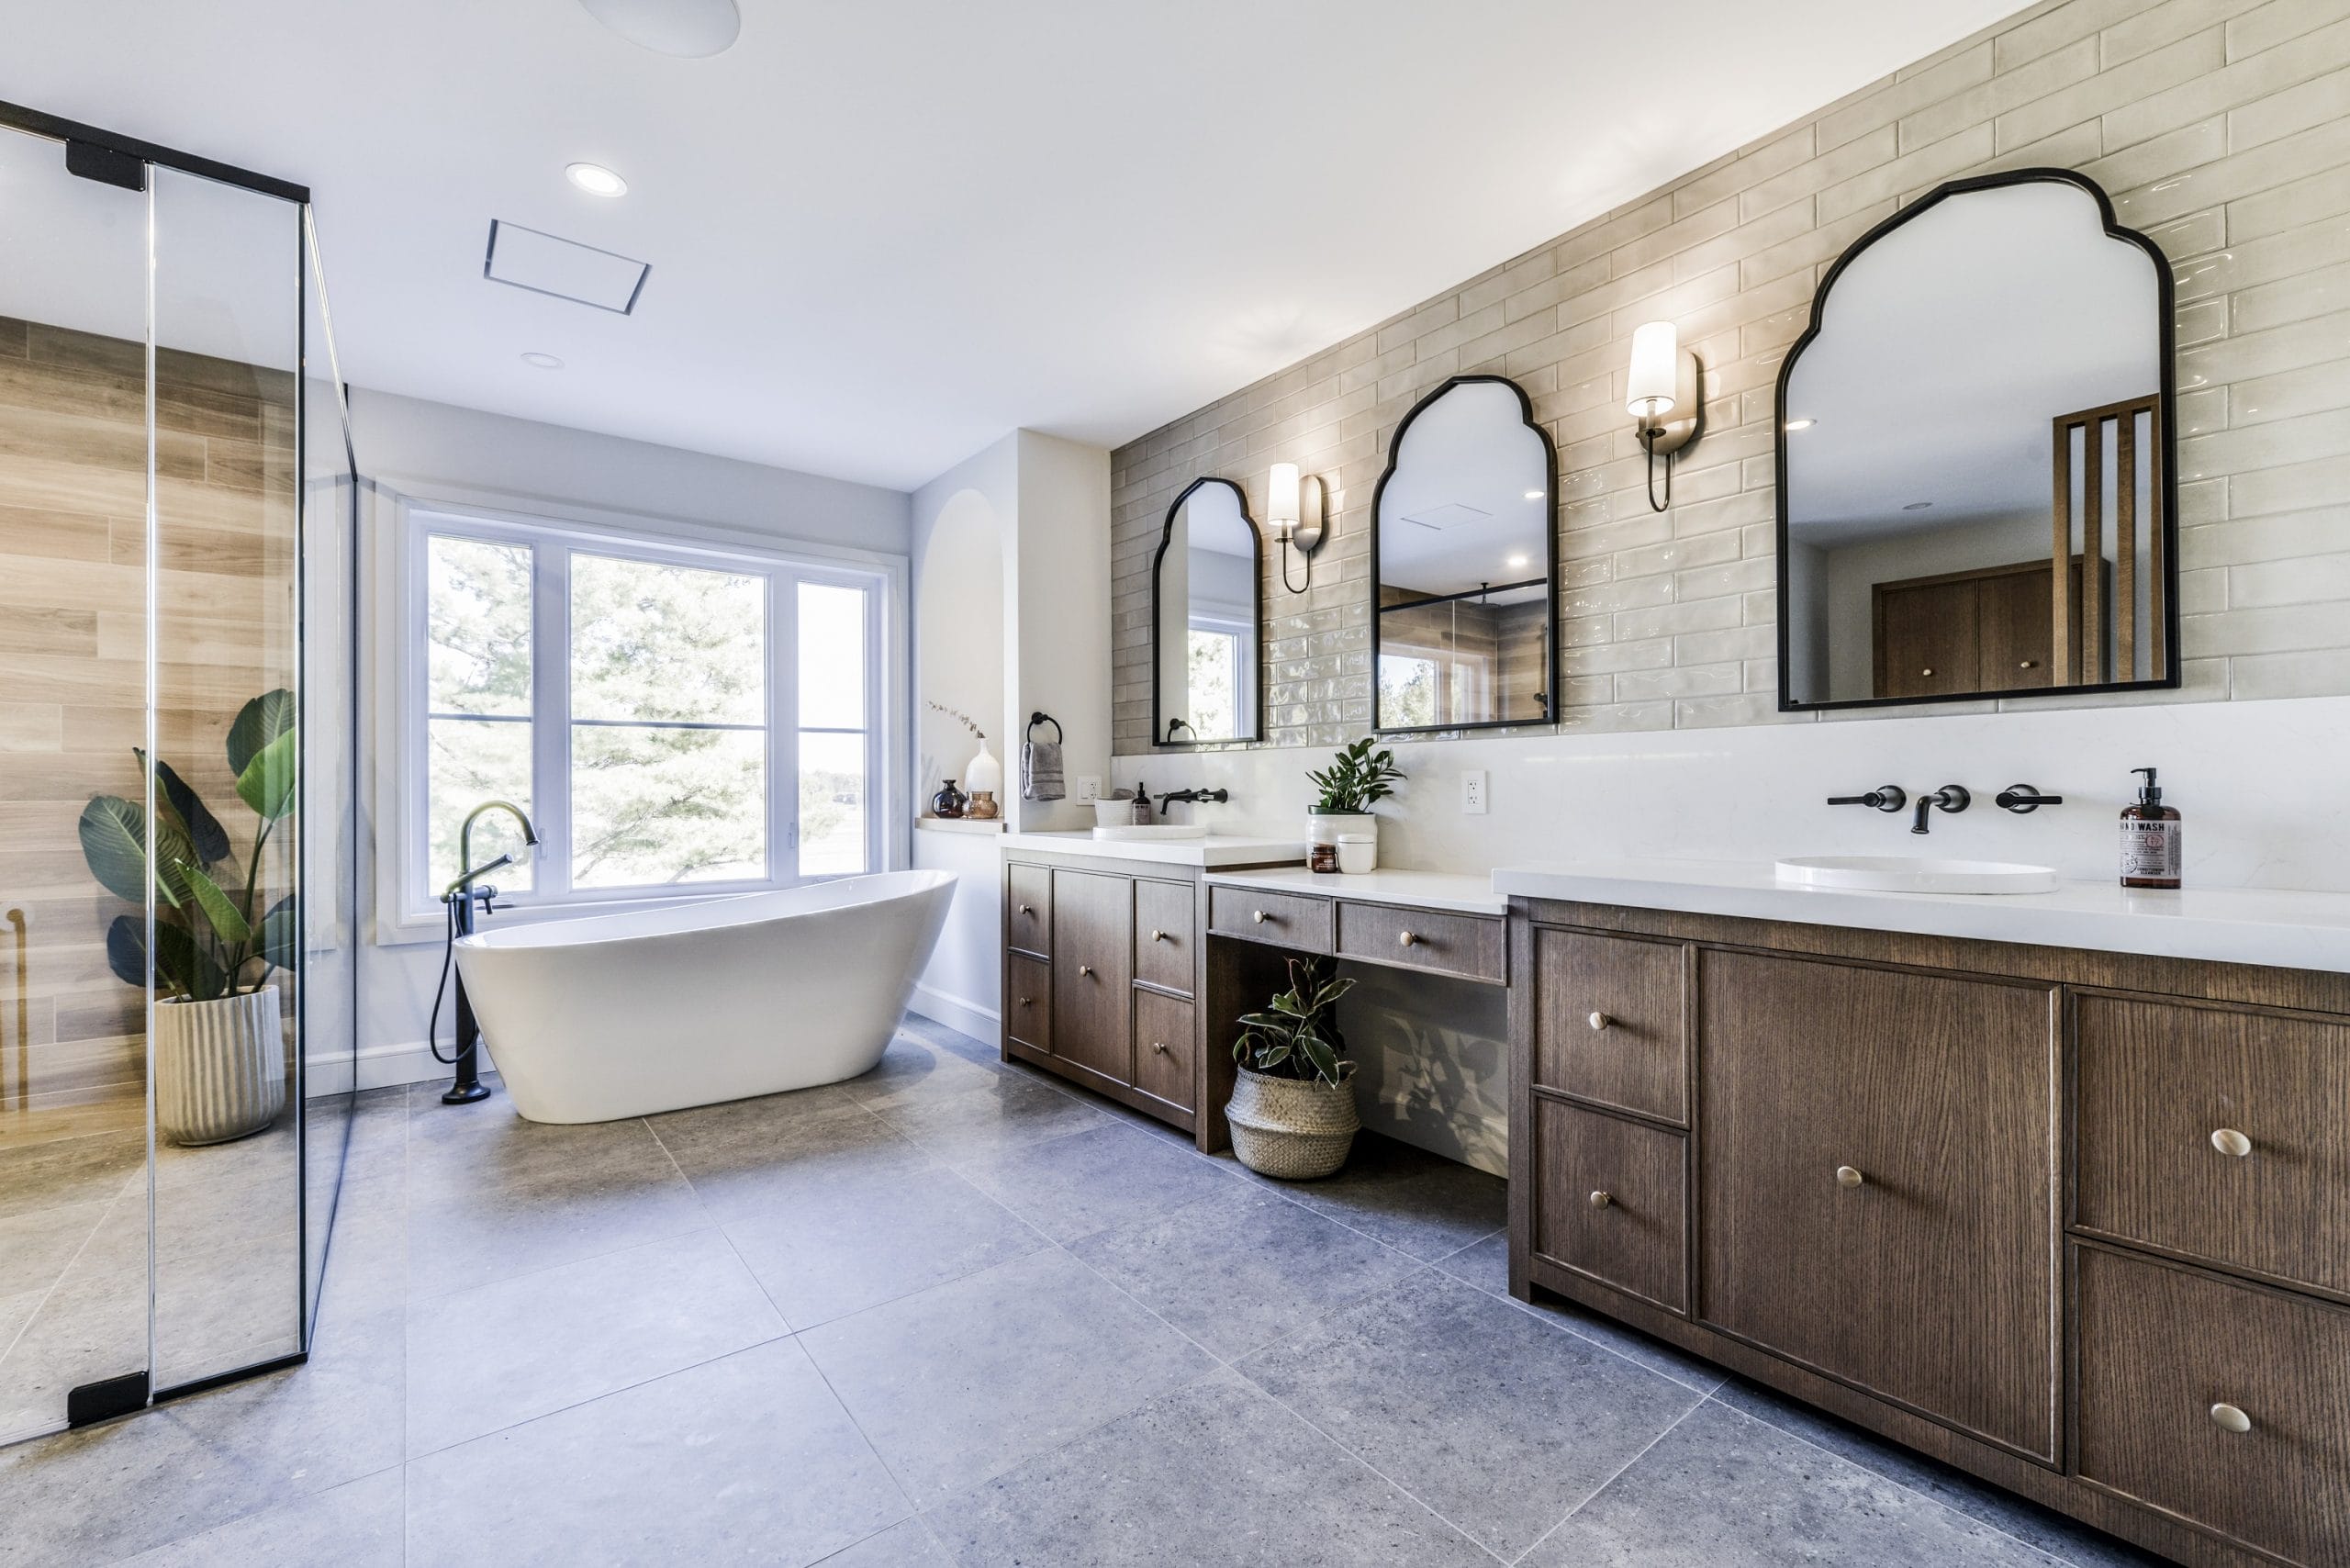 vue d'ensemble de la salle de bain avec double vanité avec portes en bois, comptoirs en céramique et lavabos de céramique encastrés de Cuisines ArmoBen